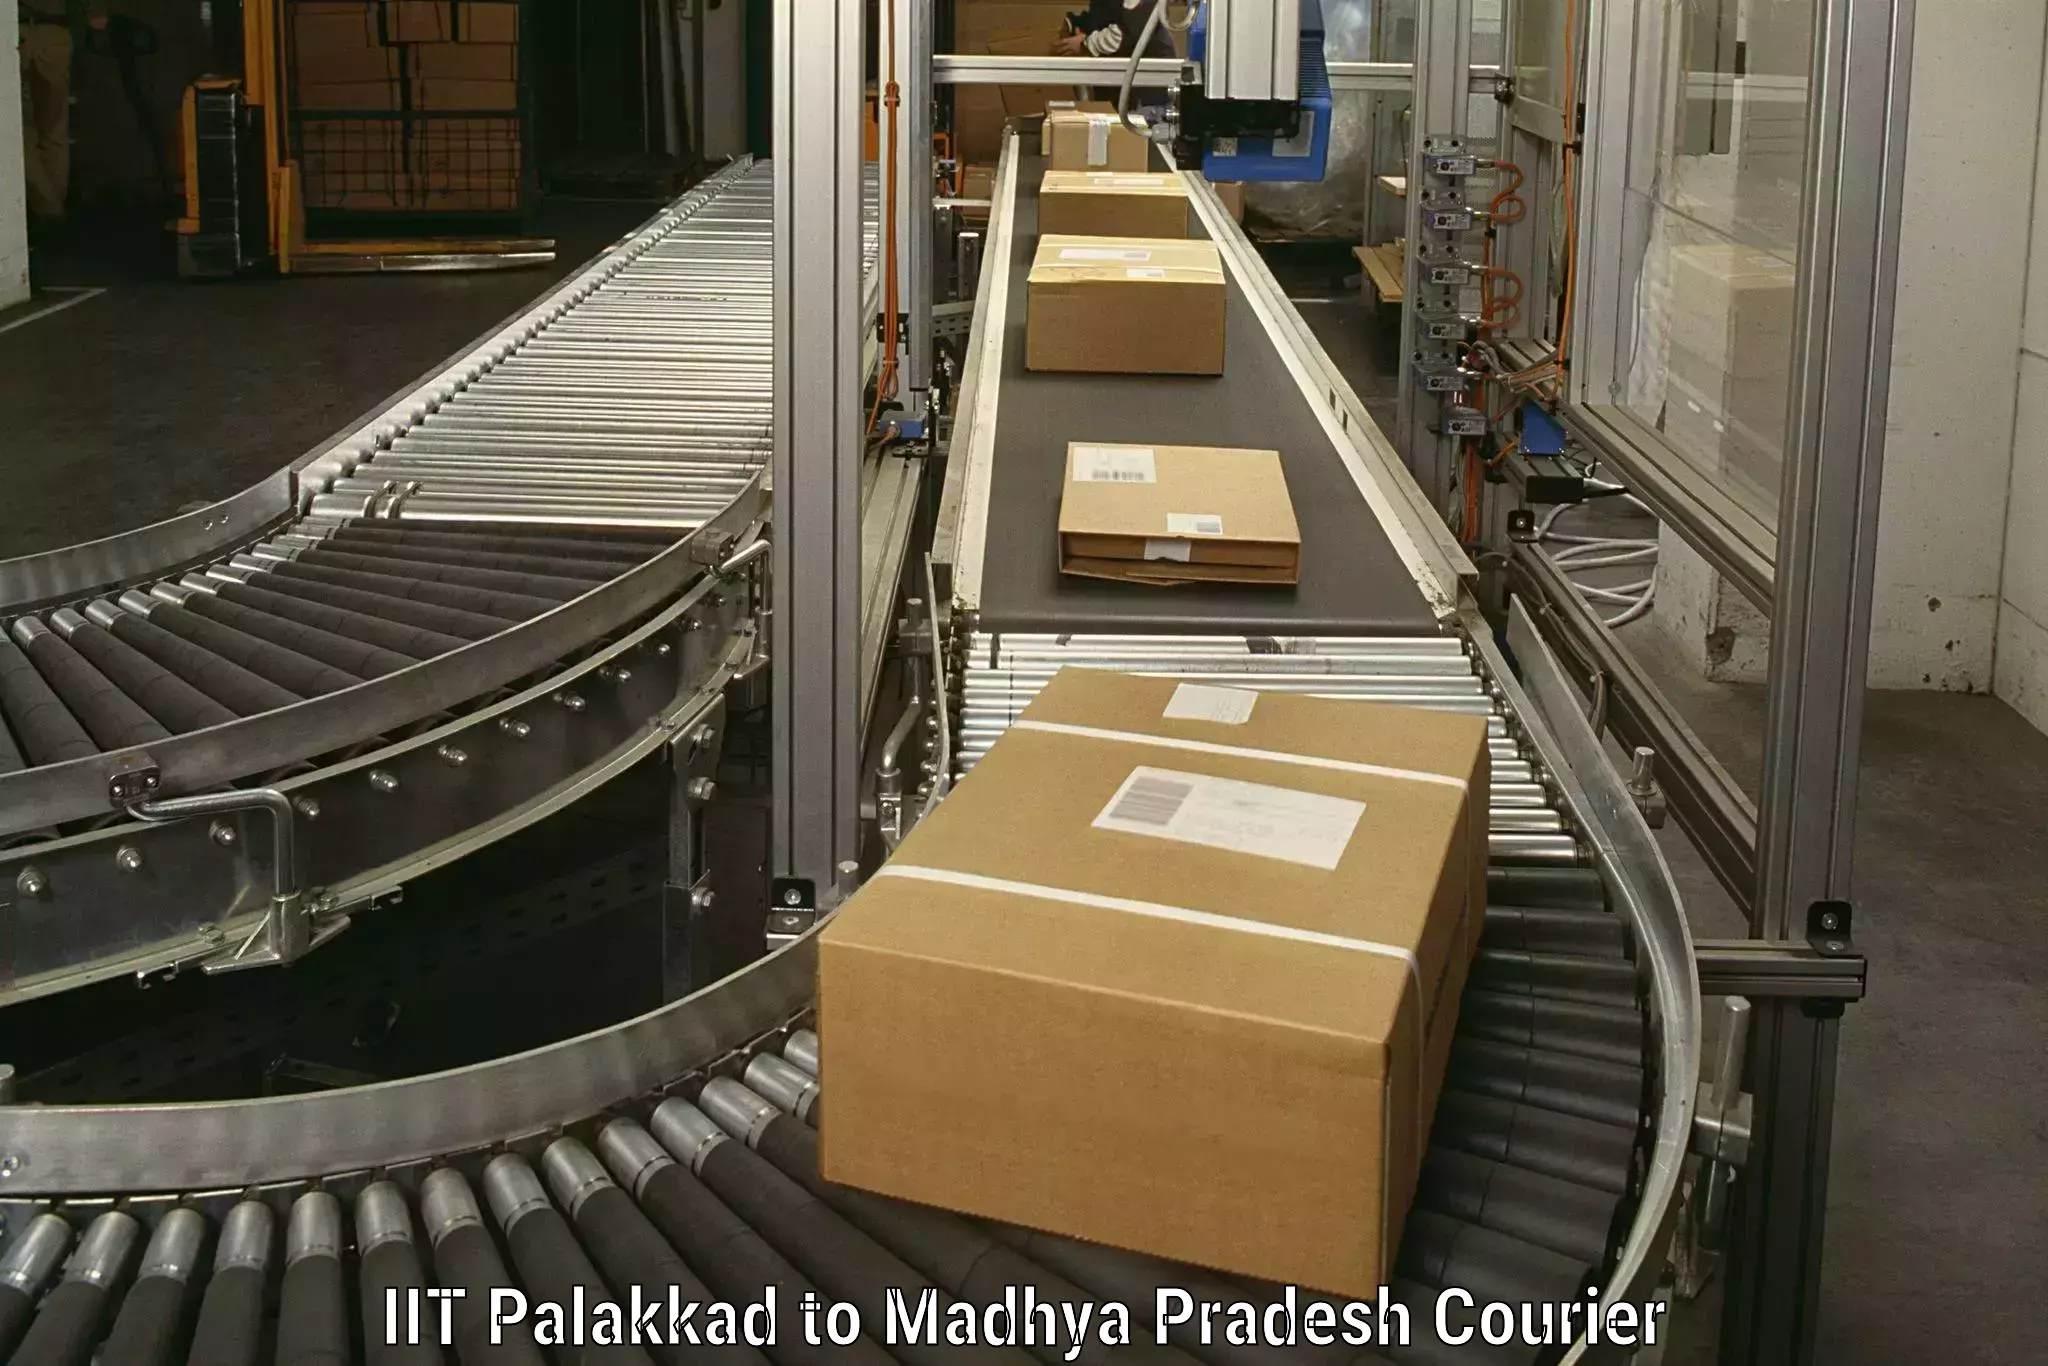 Customized relocation services IIT Palakkad to Vidisha